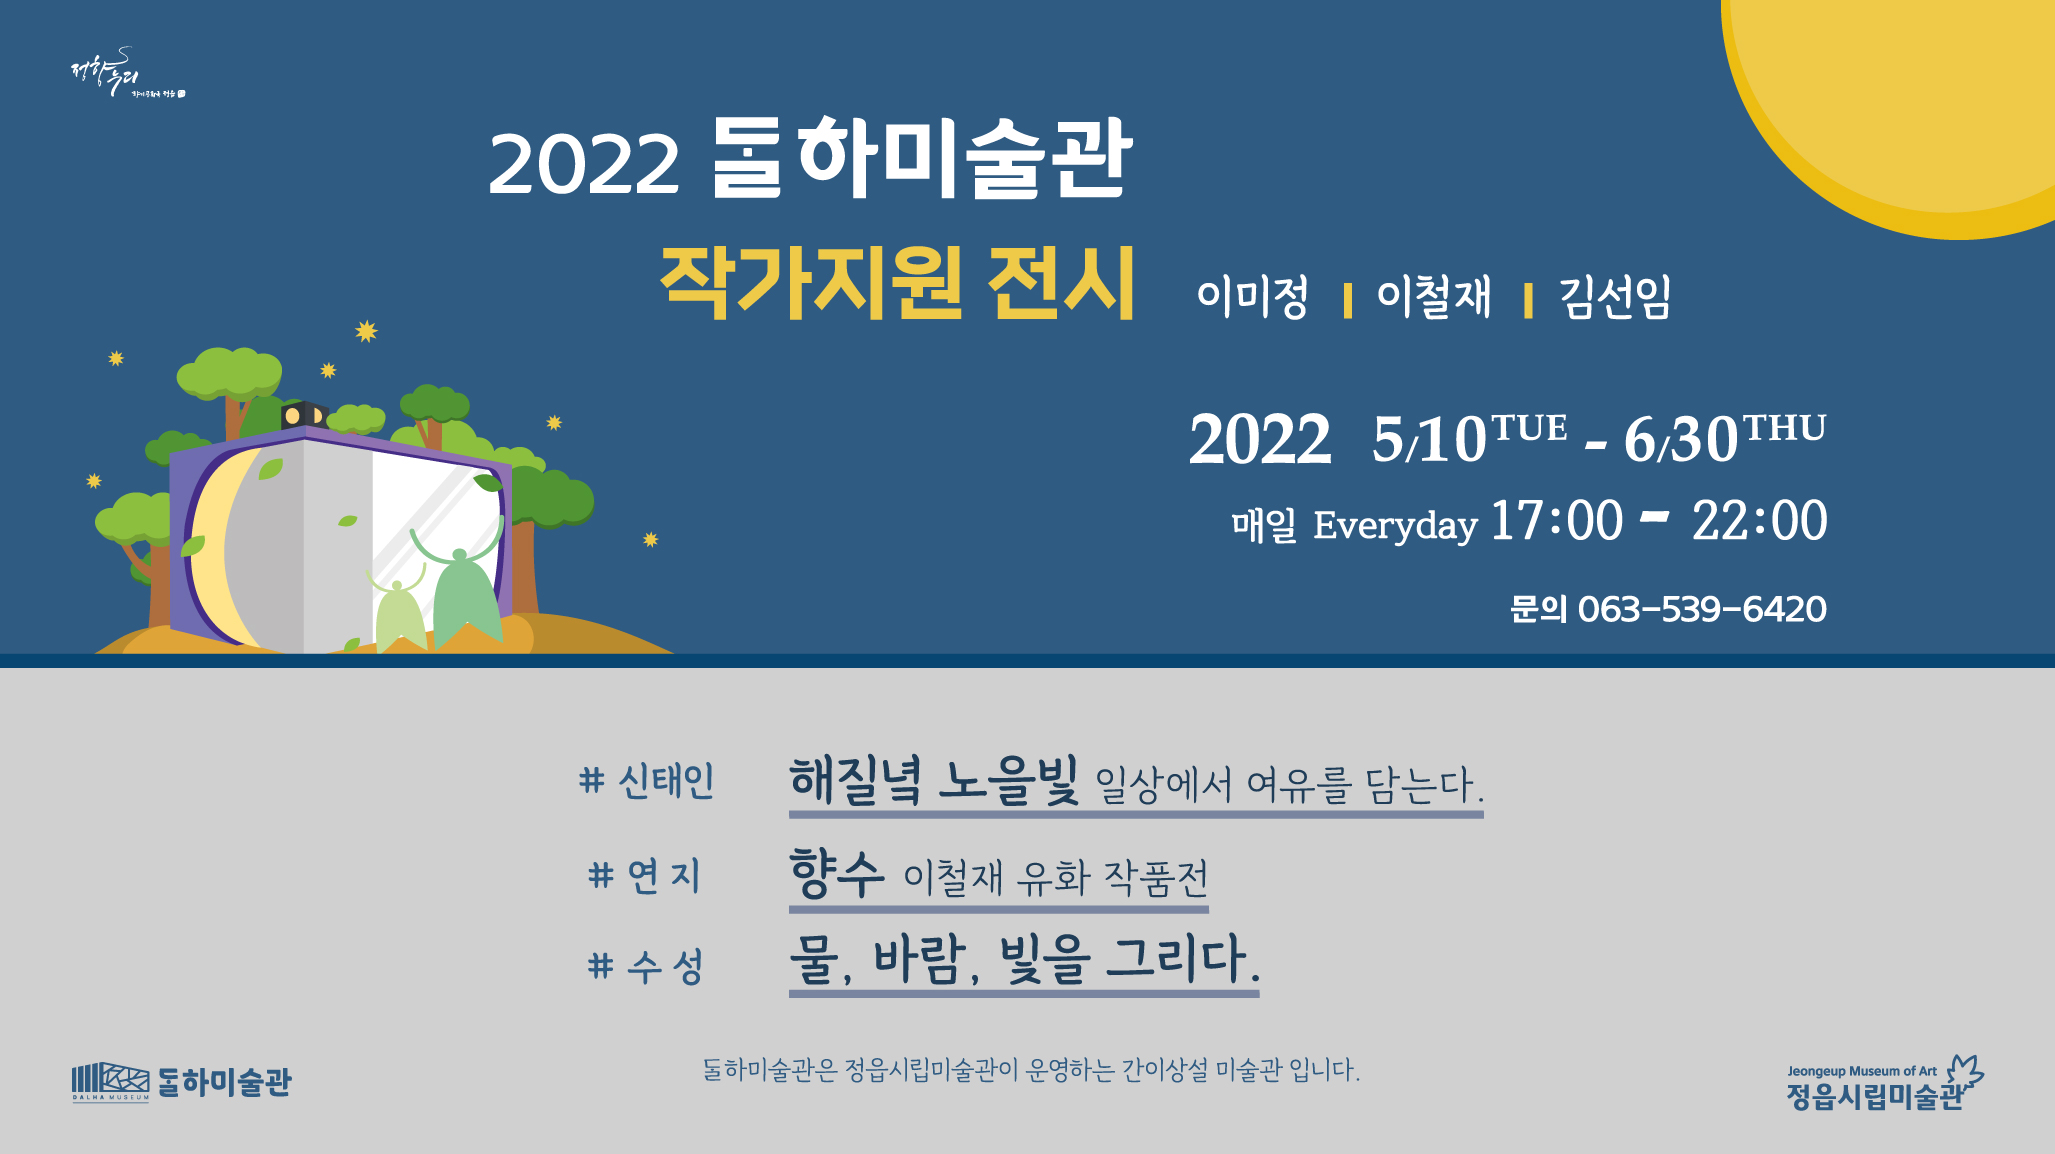 2022 달하미술관 작가지원 전시(1차 5. 10. - 6. 30.)